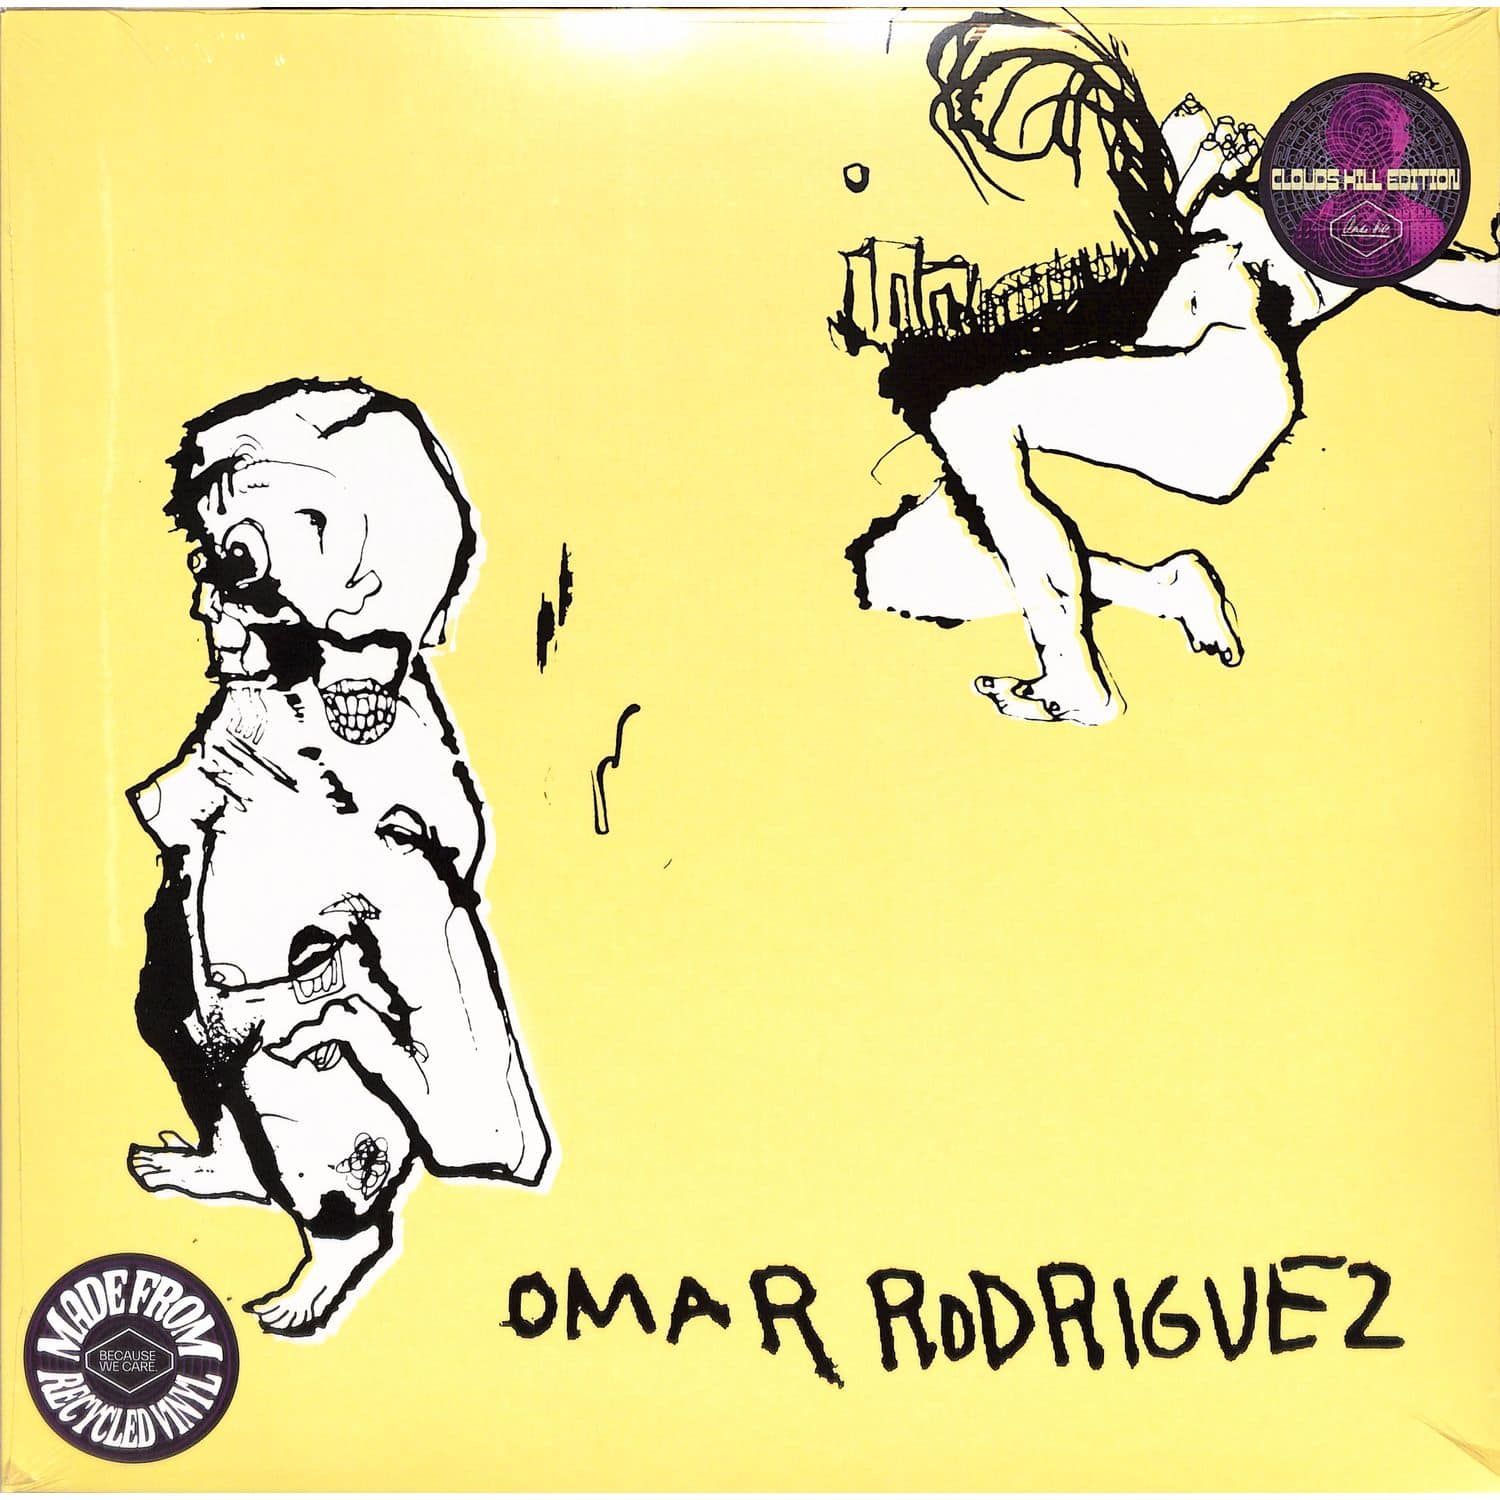 Omar Rodrguez-Lpez - OMAR RODRIGUEZ 